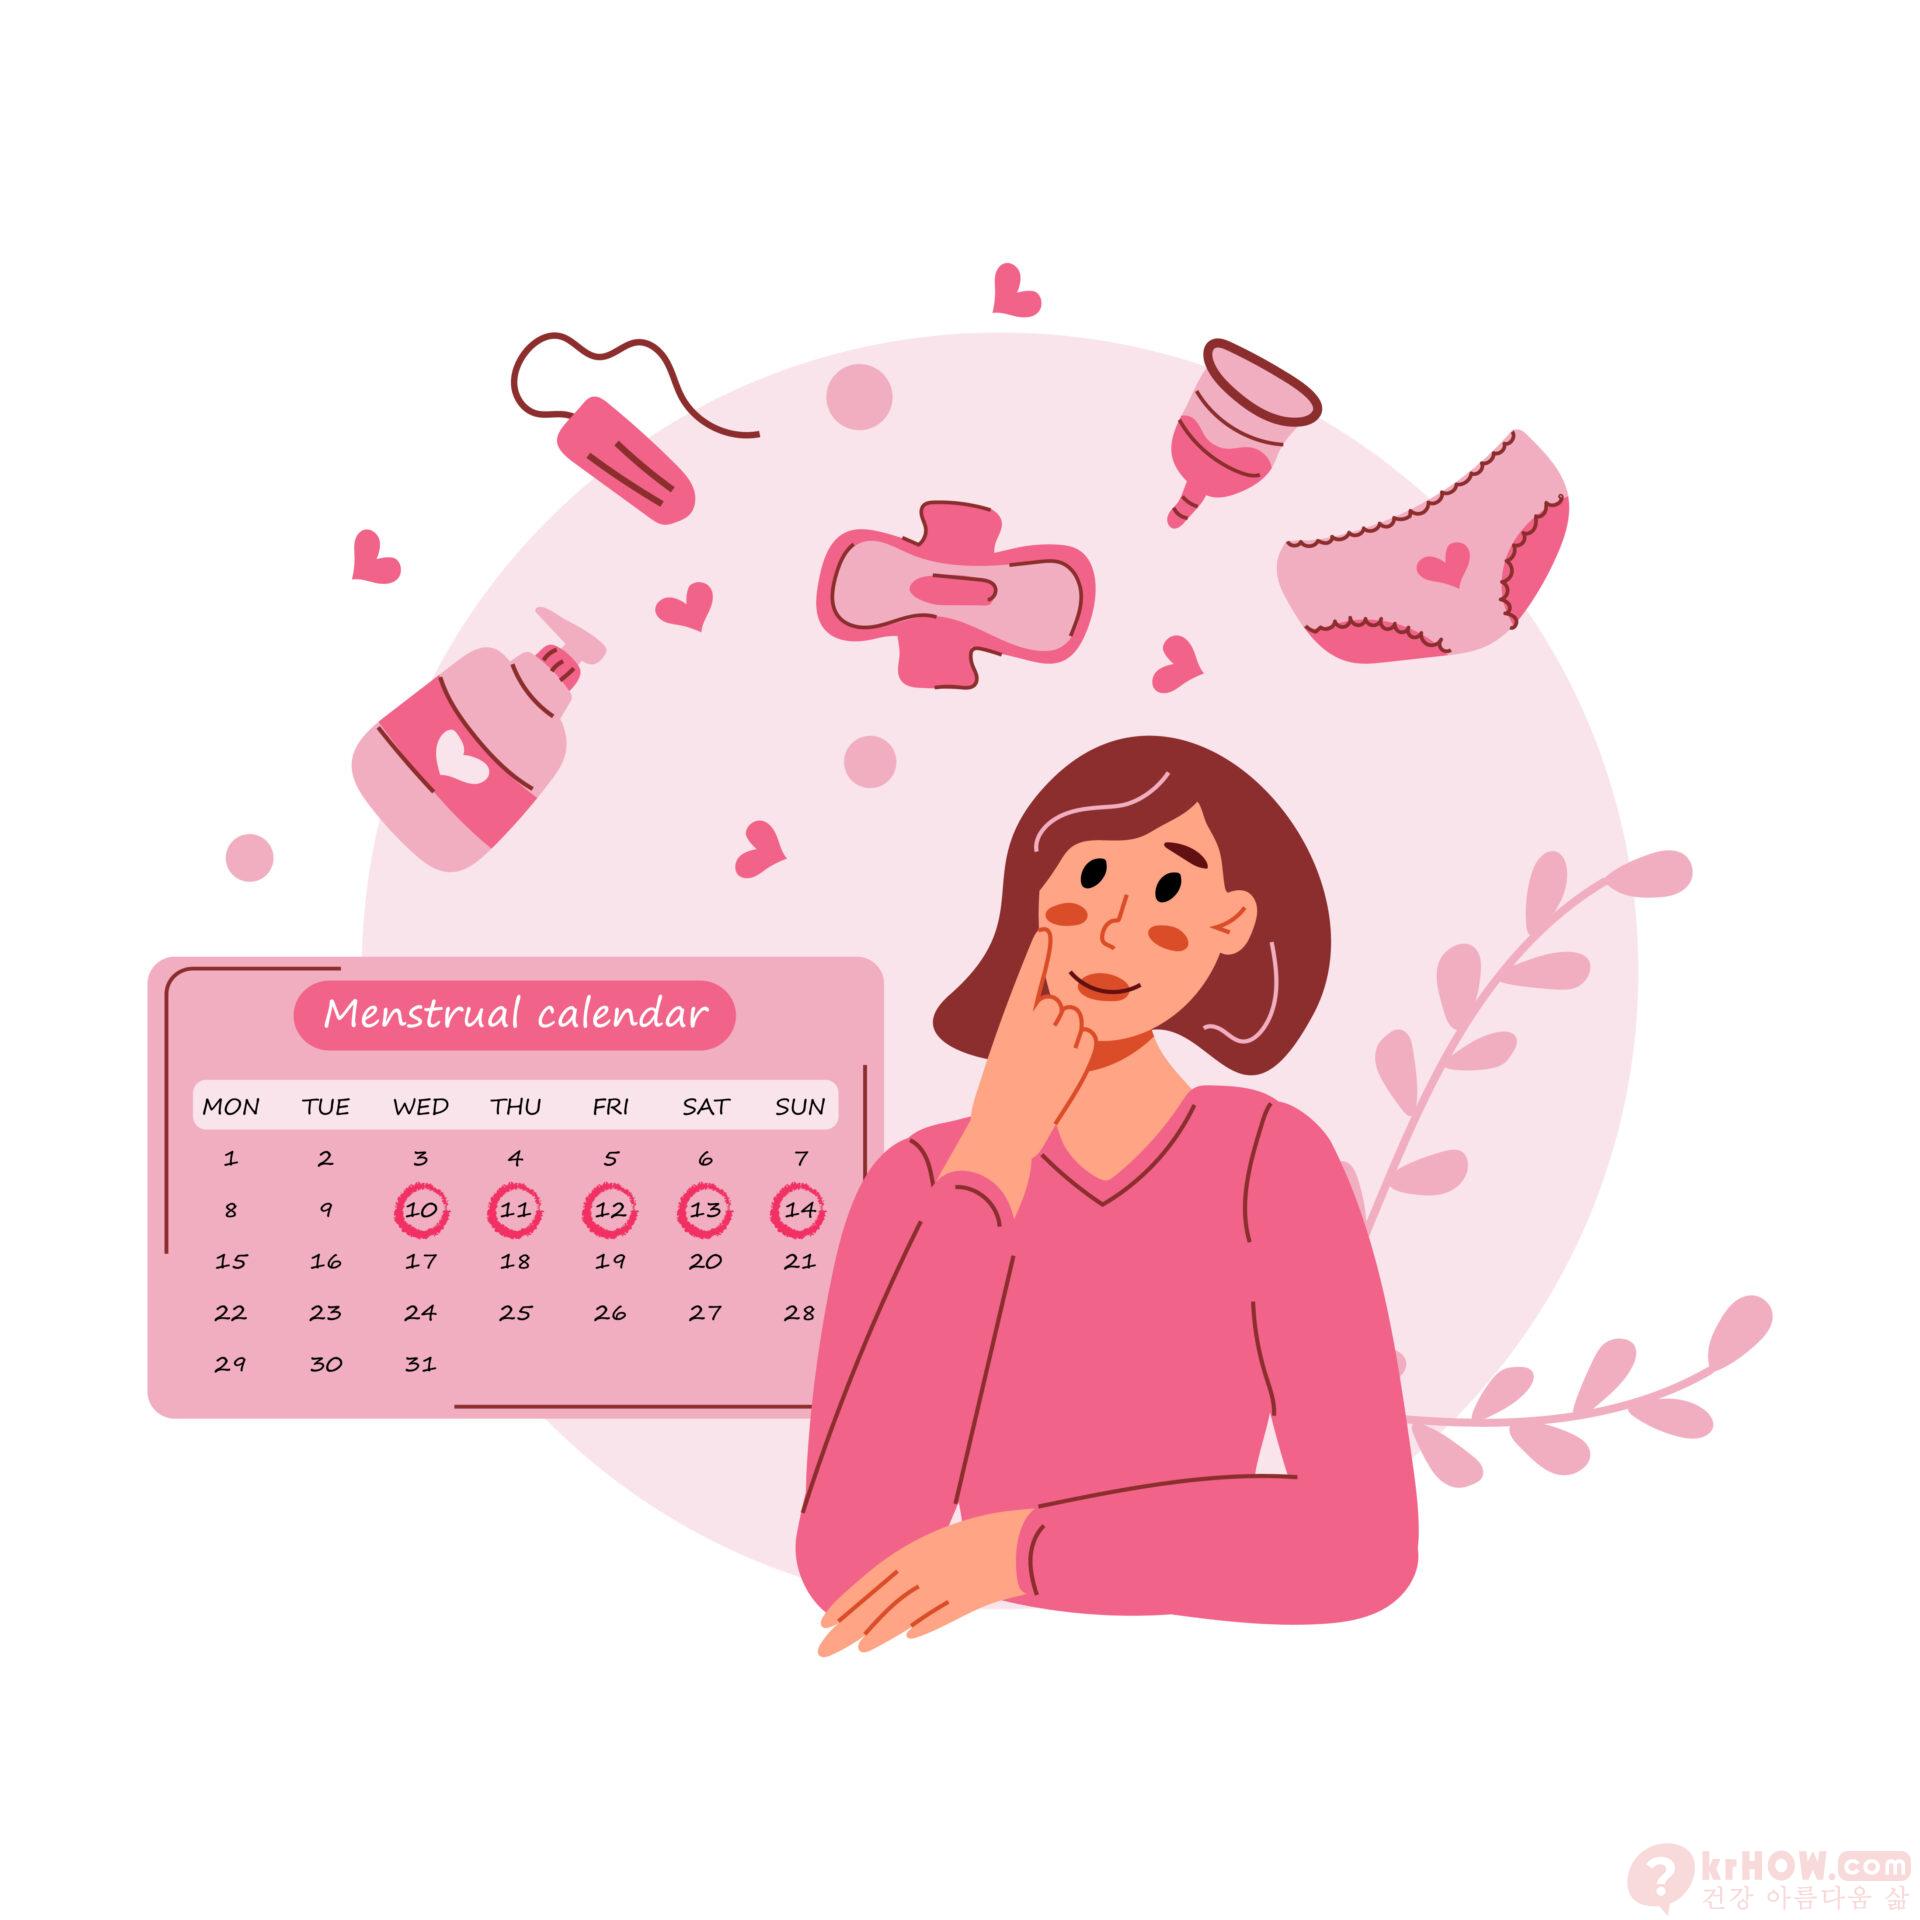 폐경 후 월경 가능성 (Menstruation Possibility After Menopause)